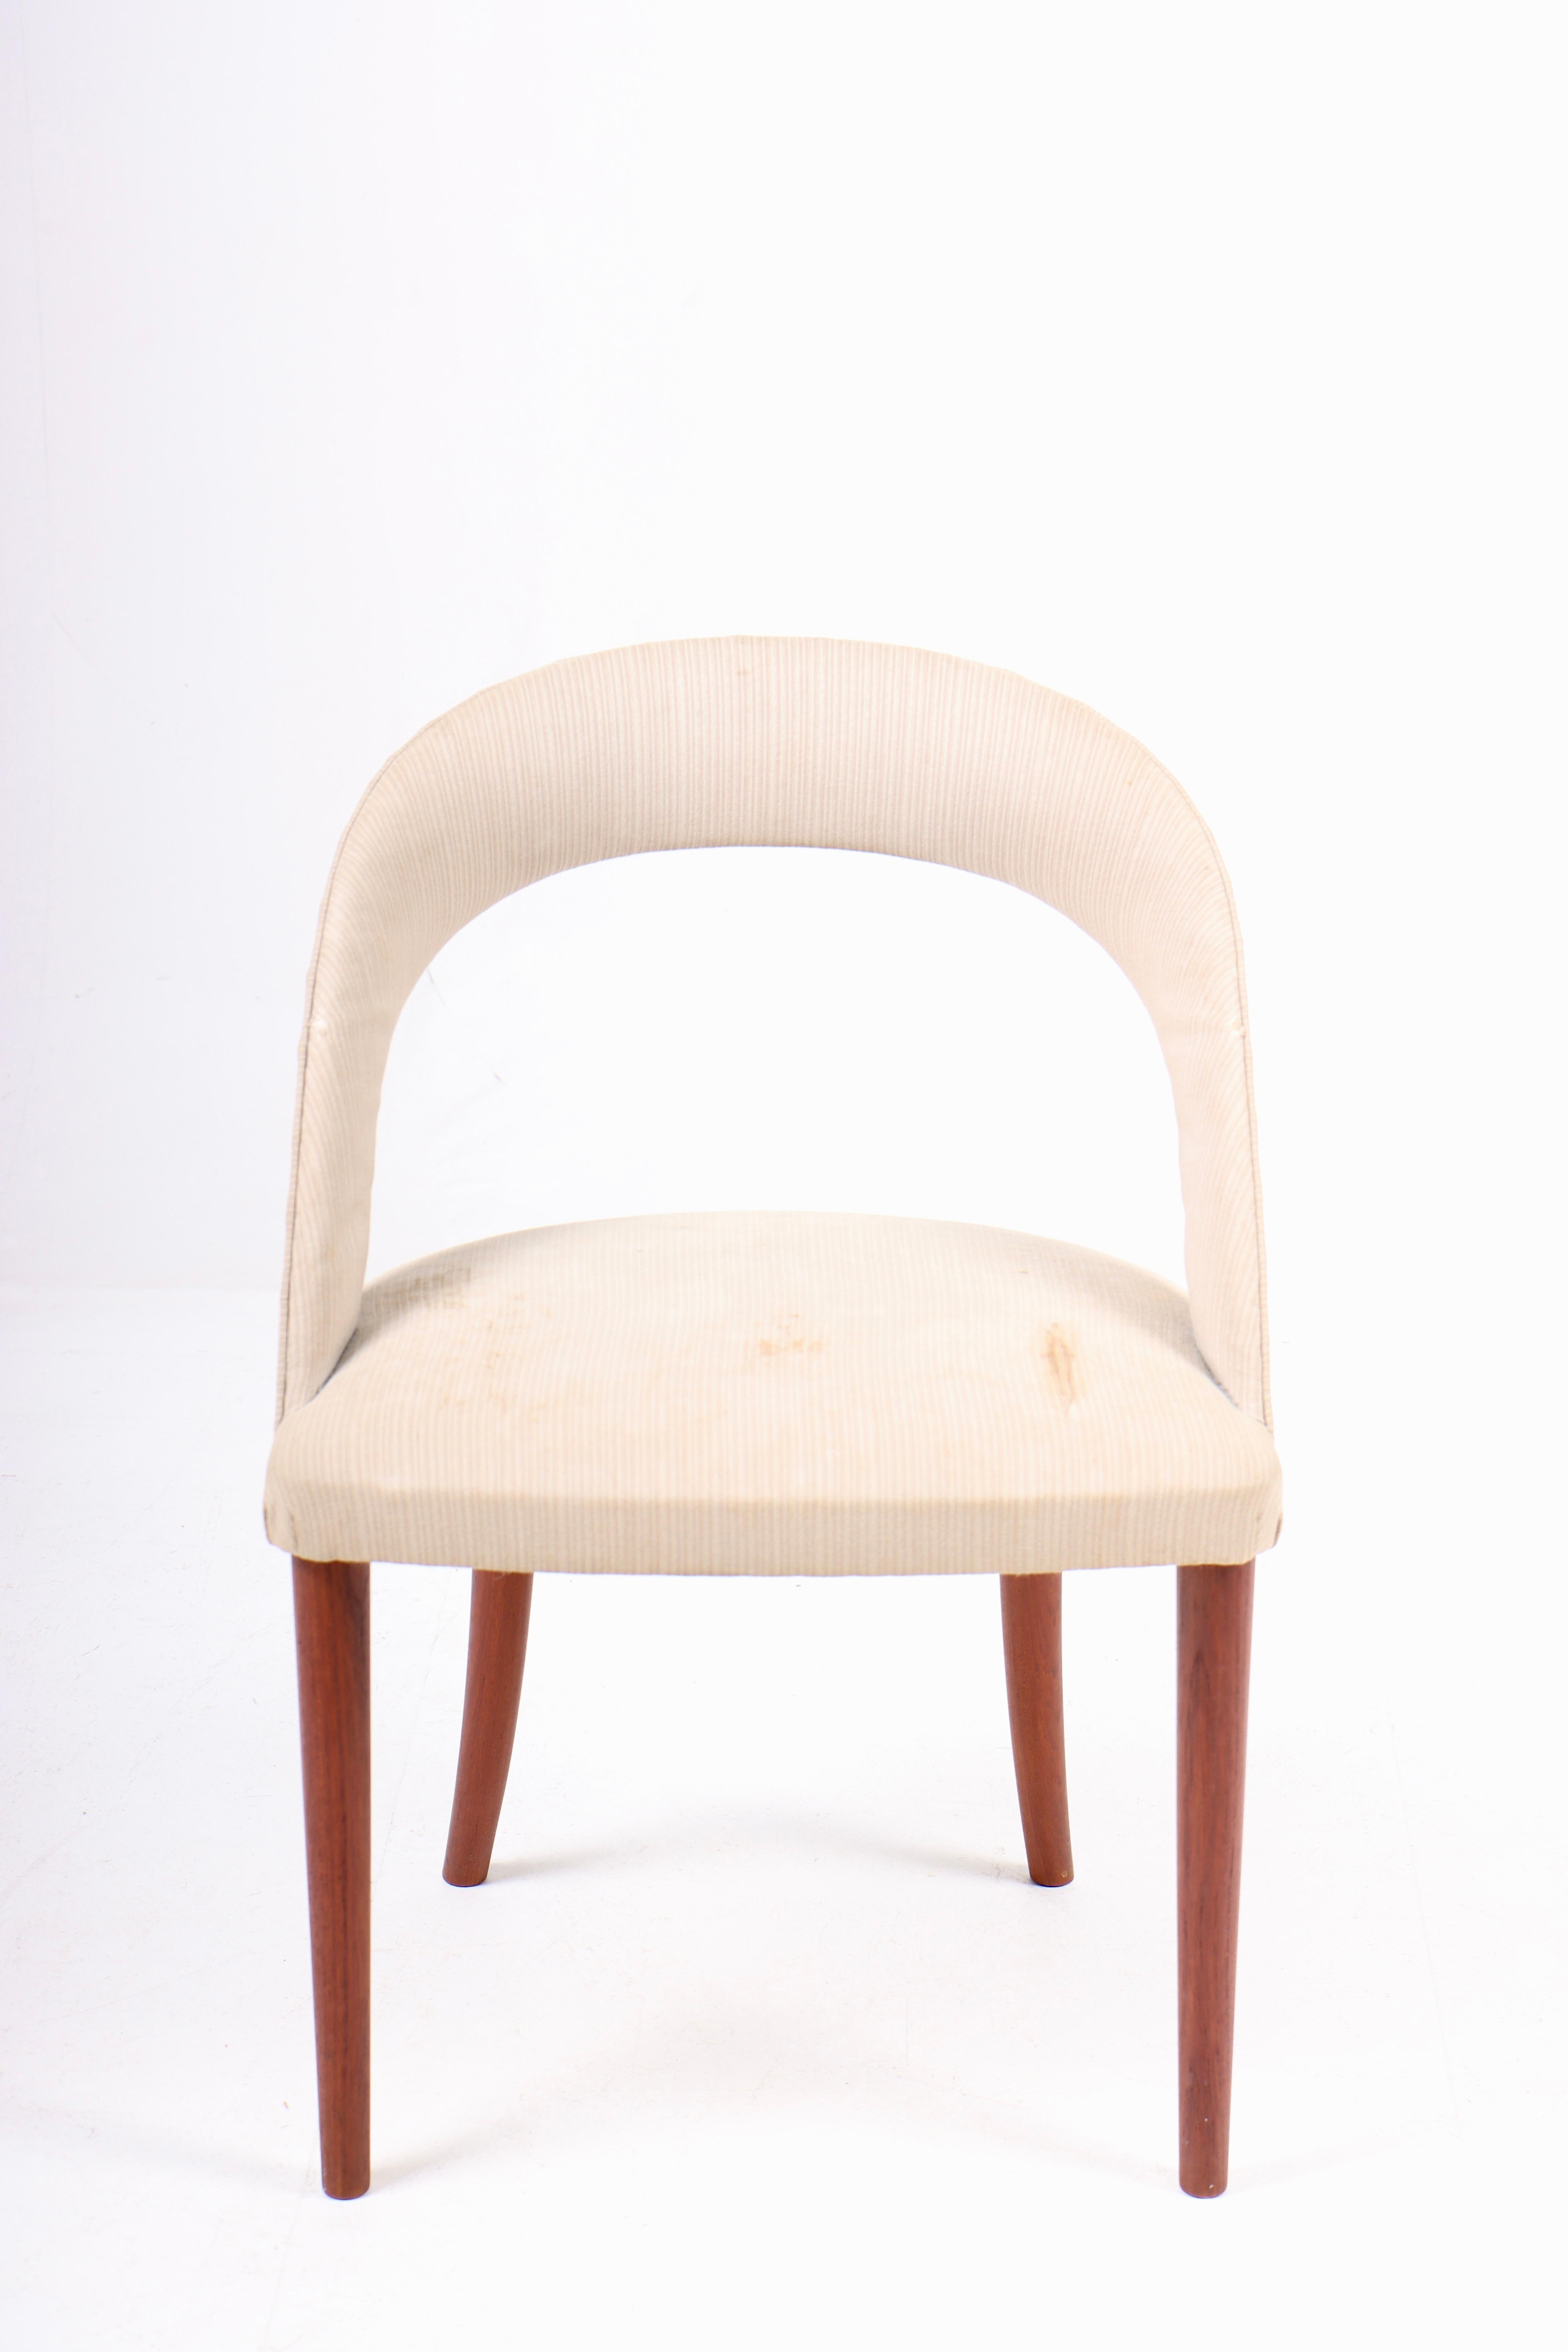 Beistellstuhl aus Stoff, entworfen von Frode Holm. Hergestellt in Dänemark, Originalzustand.